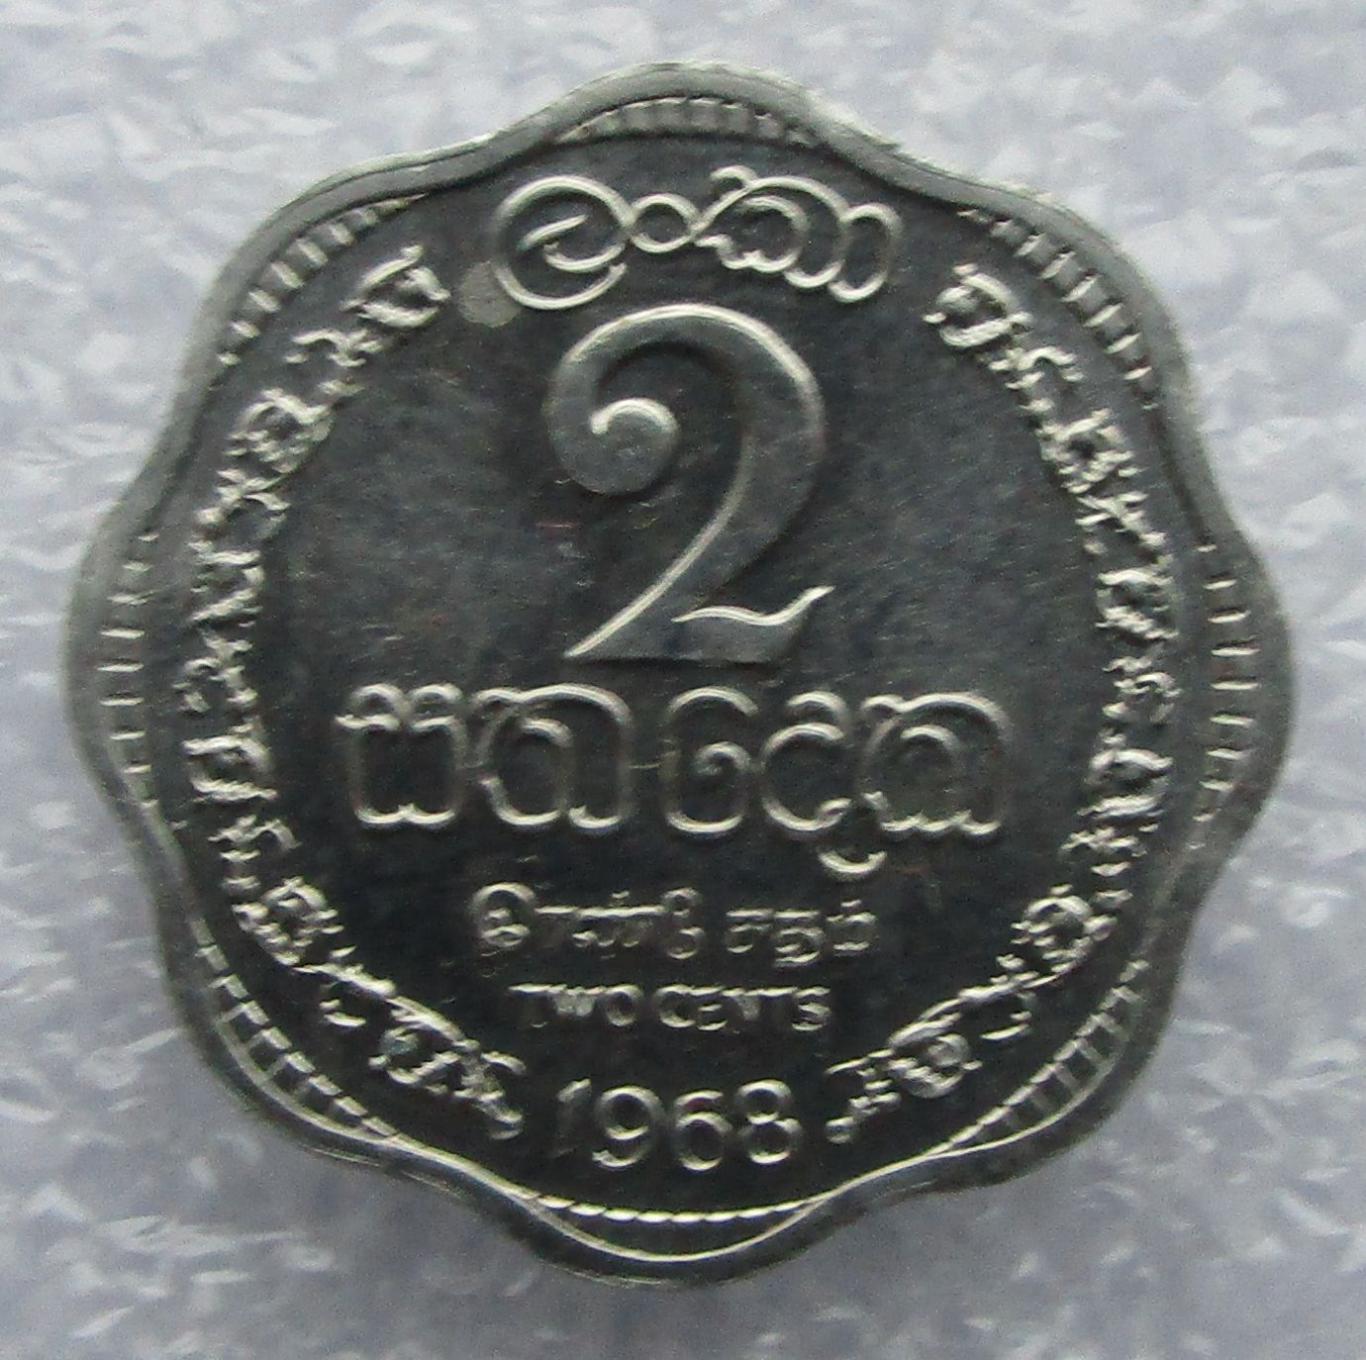 Цейлон, 2 цента - 1968. UNC. Штемпельный блеск. 1